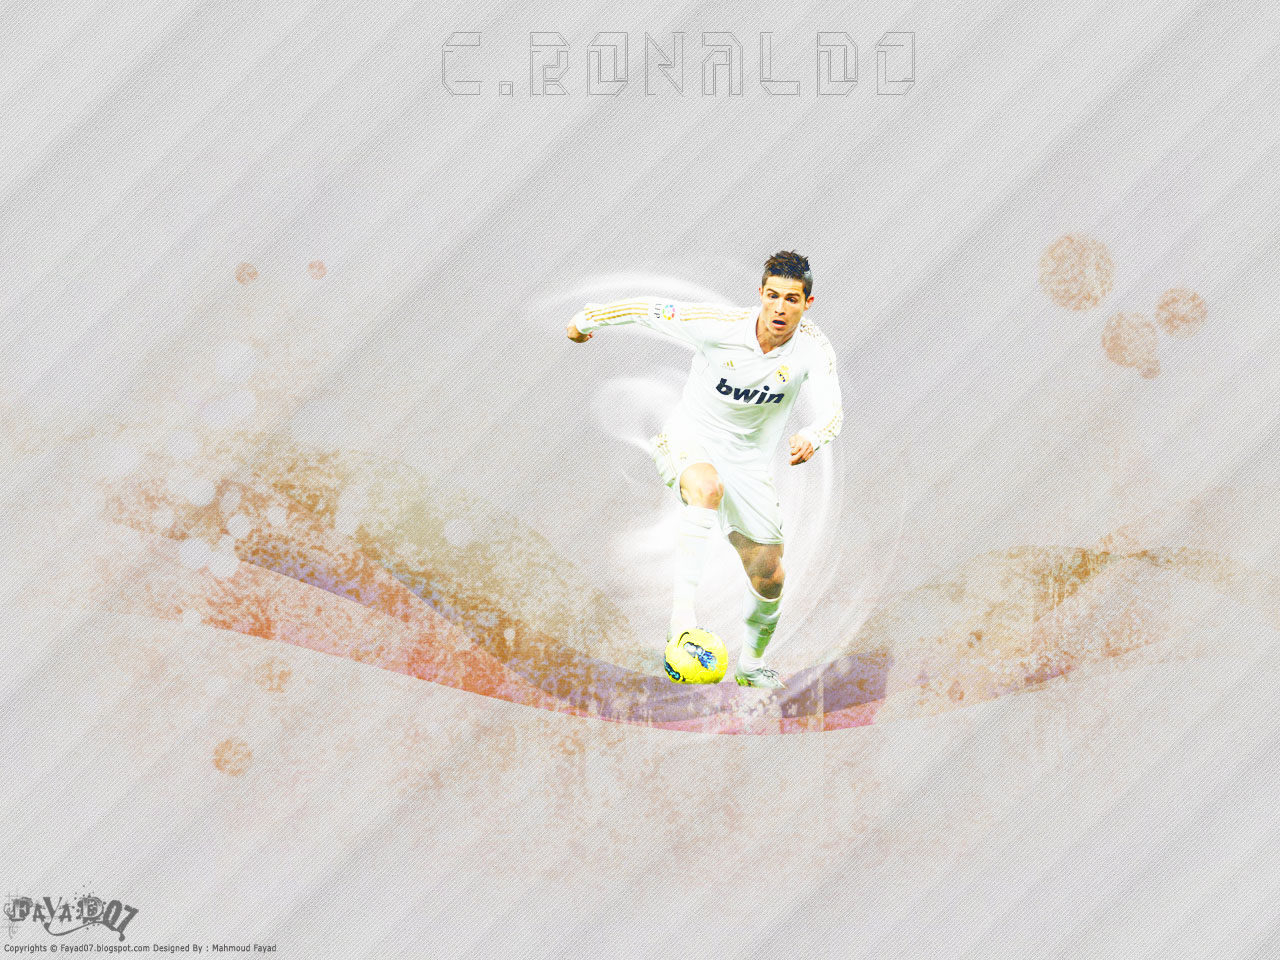 http://4.bp.blogspot.com/-UNMwb-y1qIQ/UOM07AAkaRI/AAAAAAAAEXg/5VQXsWoJBbk/s1600/35_C+Ronaldo.jpg